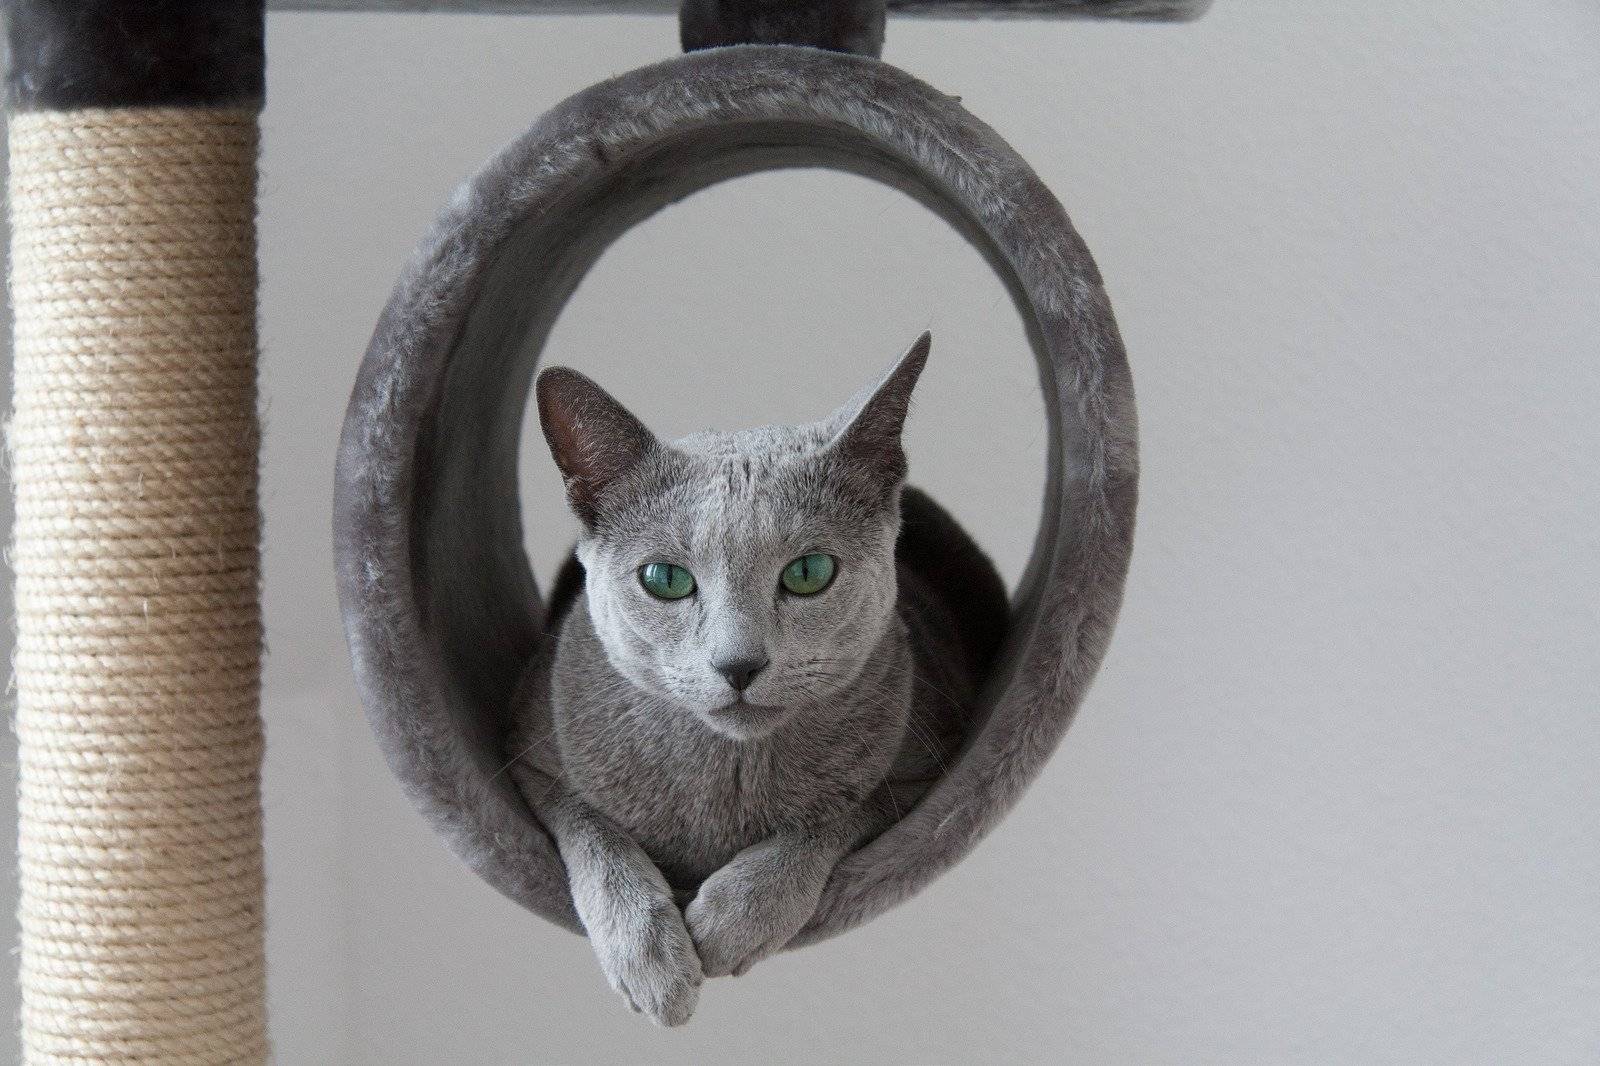 Глаза голубые у кошки сибирской породы